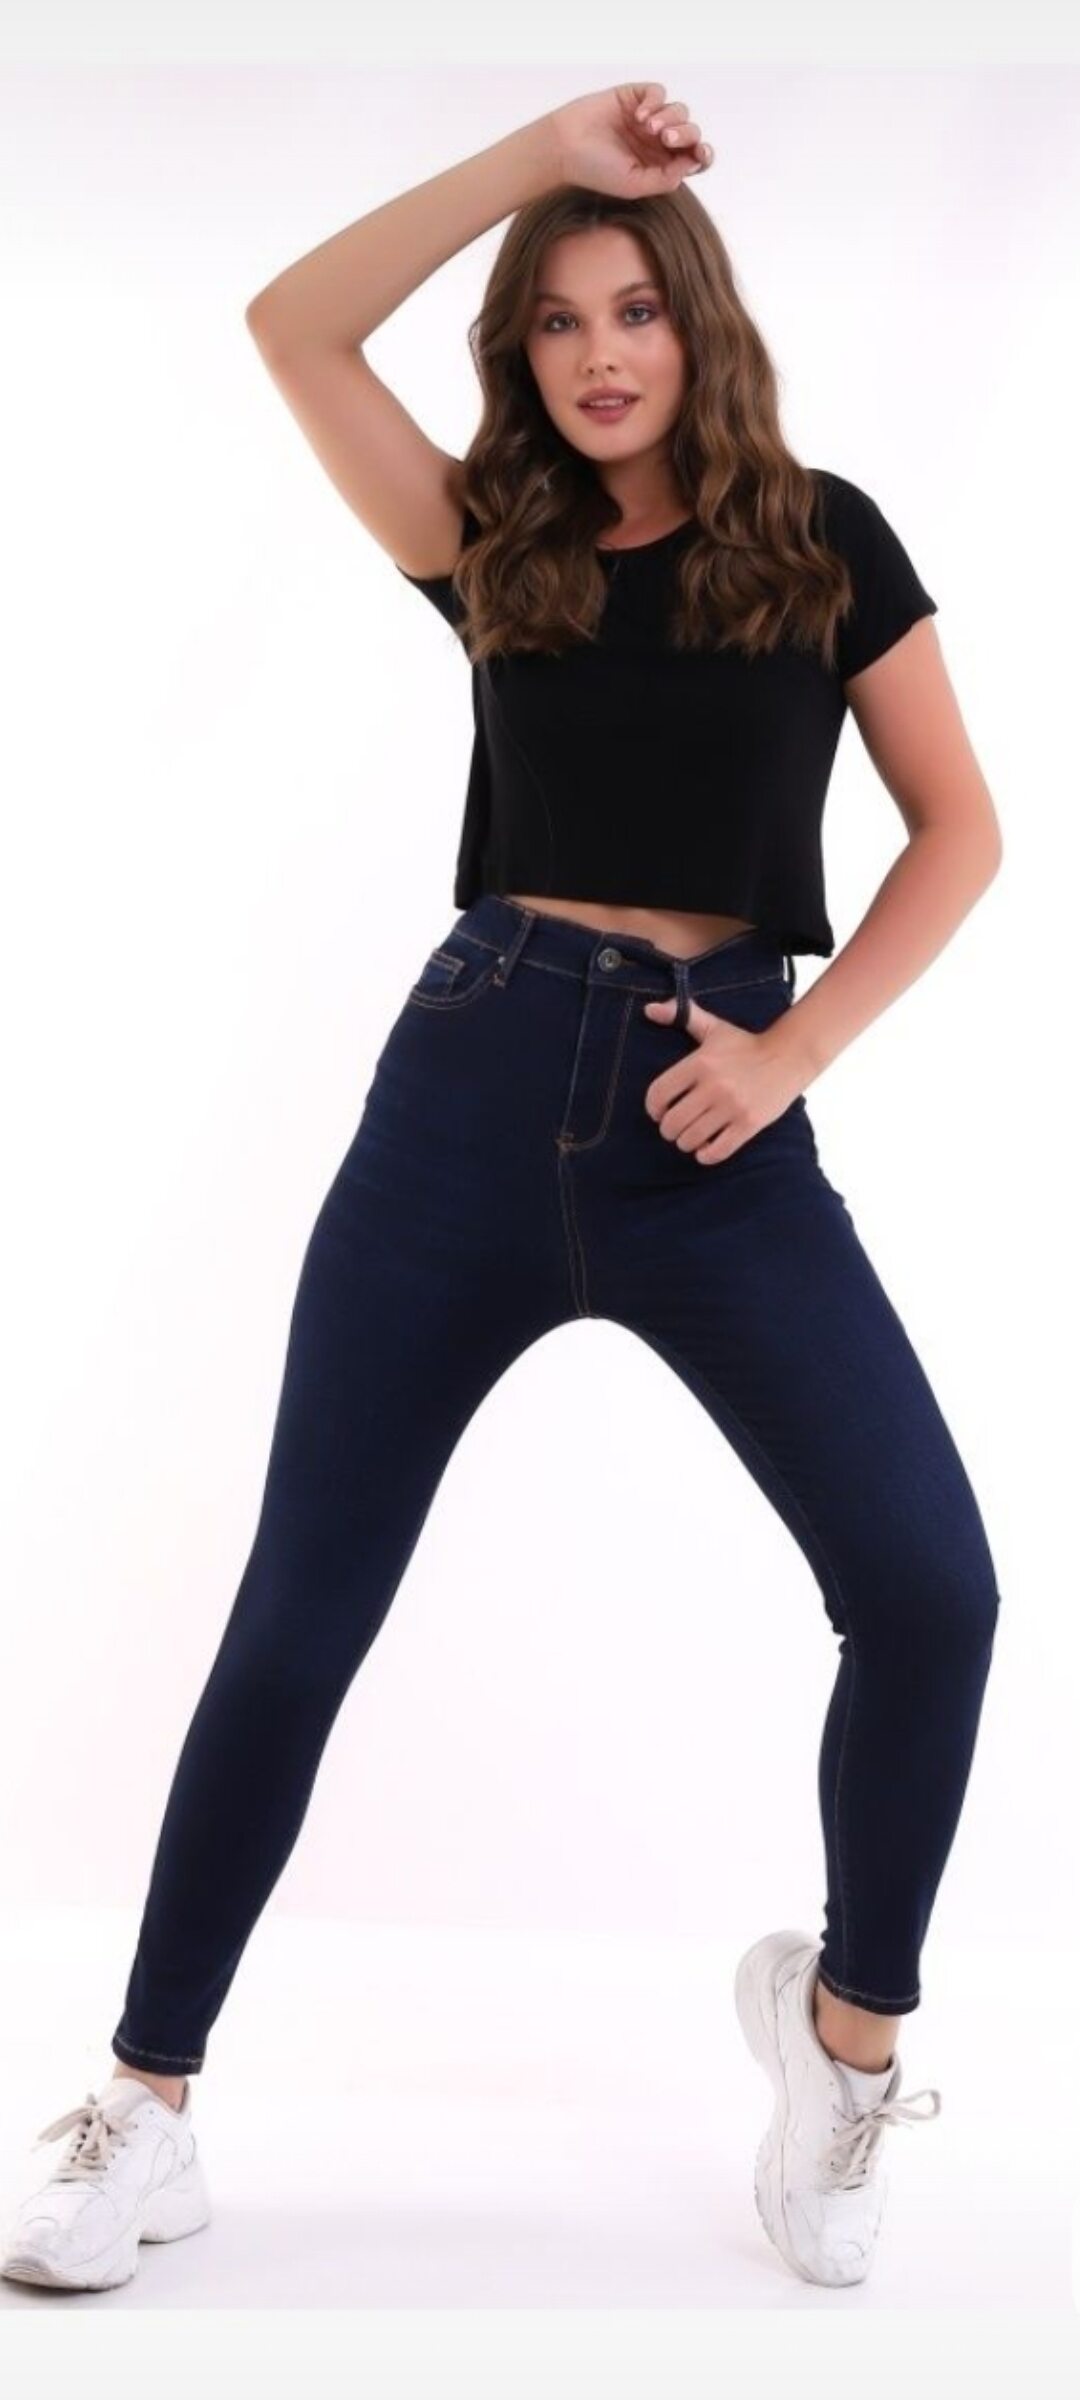 Брюки, оптом женские джинсы.. от производителя.. арт.474099